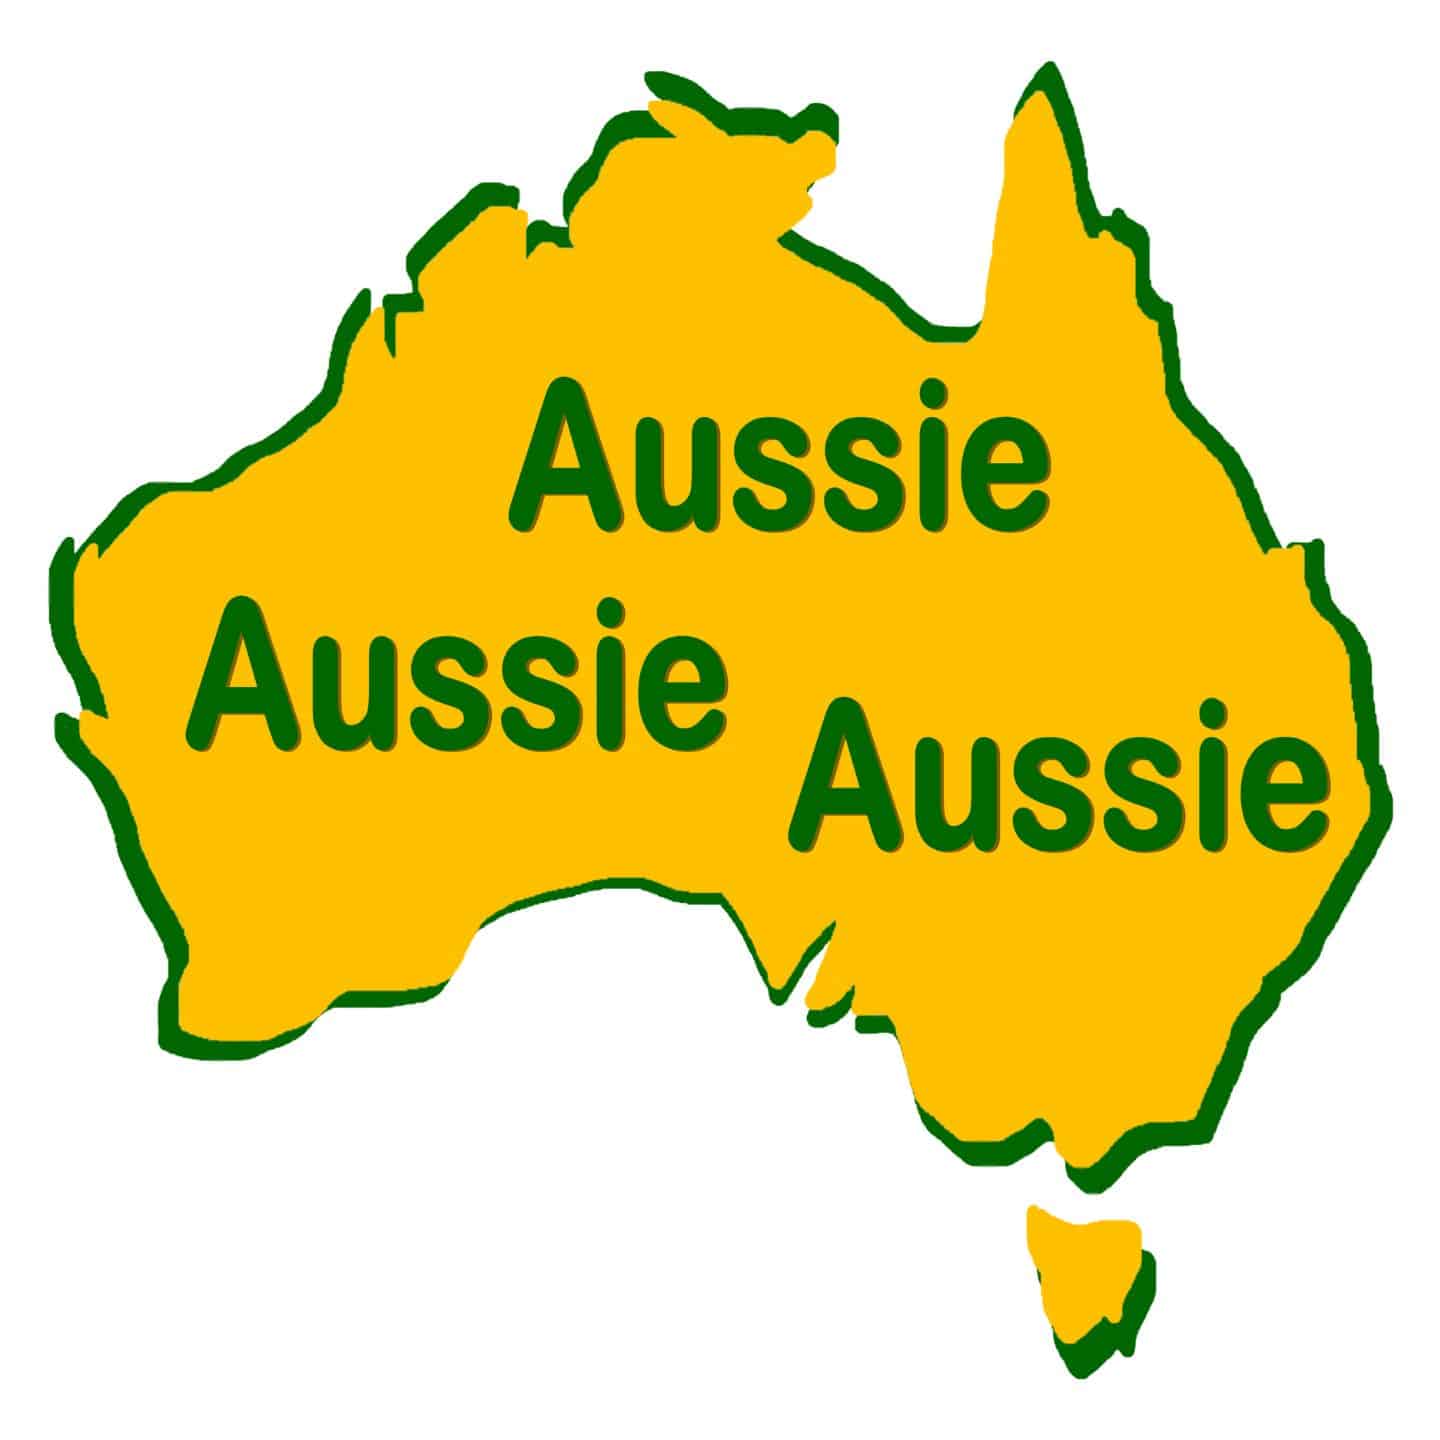 Aussie-Aussie-Aussie